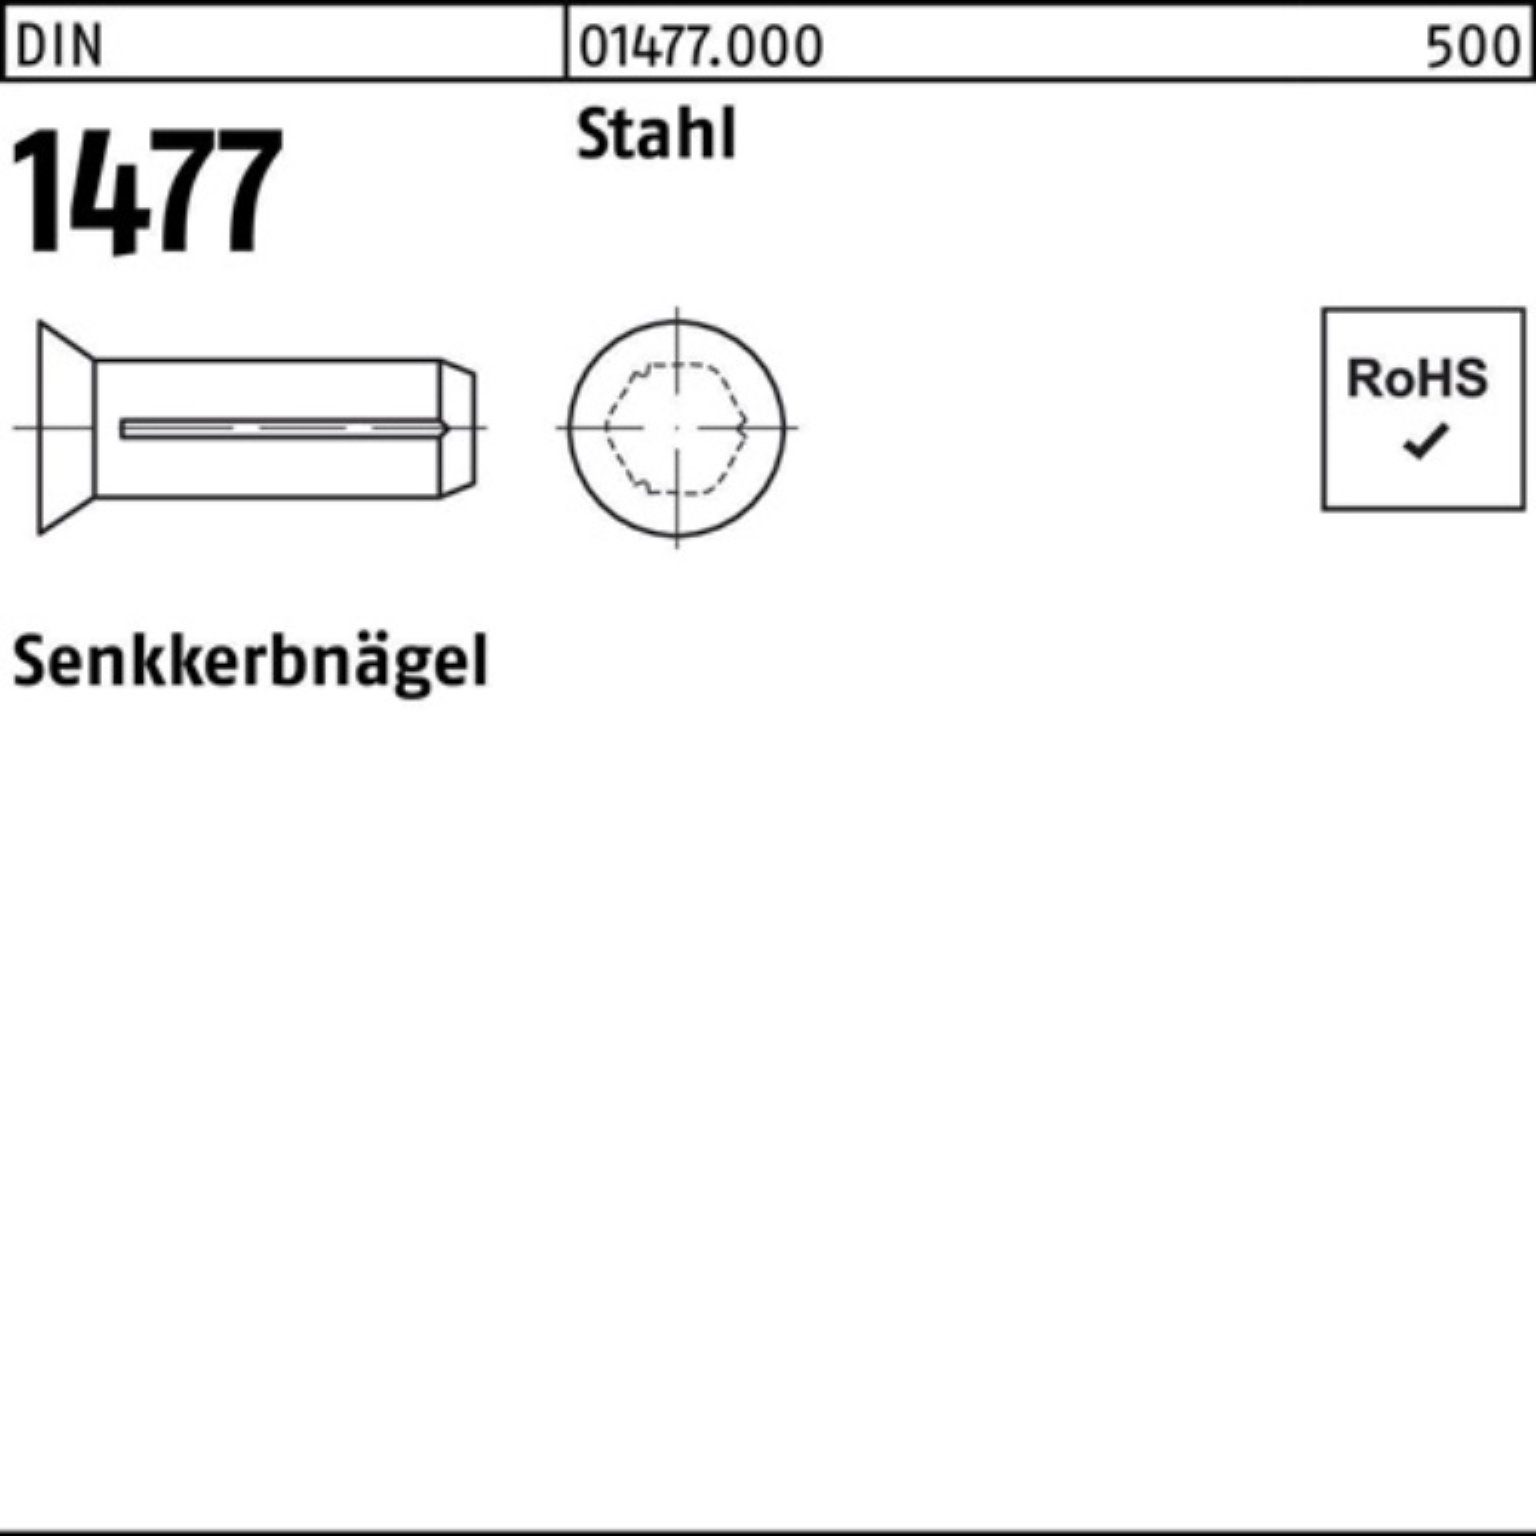 1477 DIN Reyher DIN 1477 Stahl Nagel 250er 5x Senkkerbnagel 250 Stück Pack 15 Stah